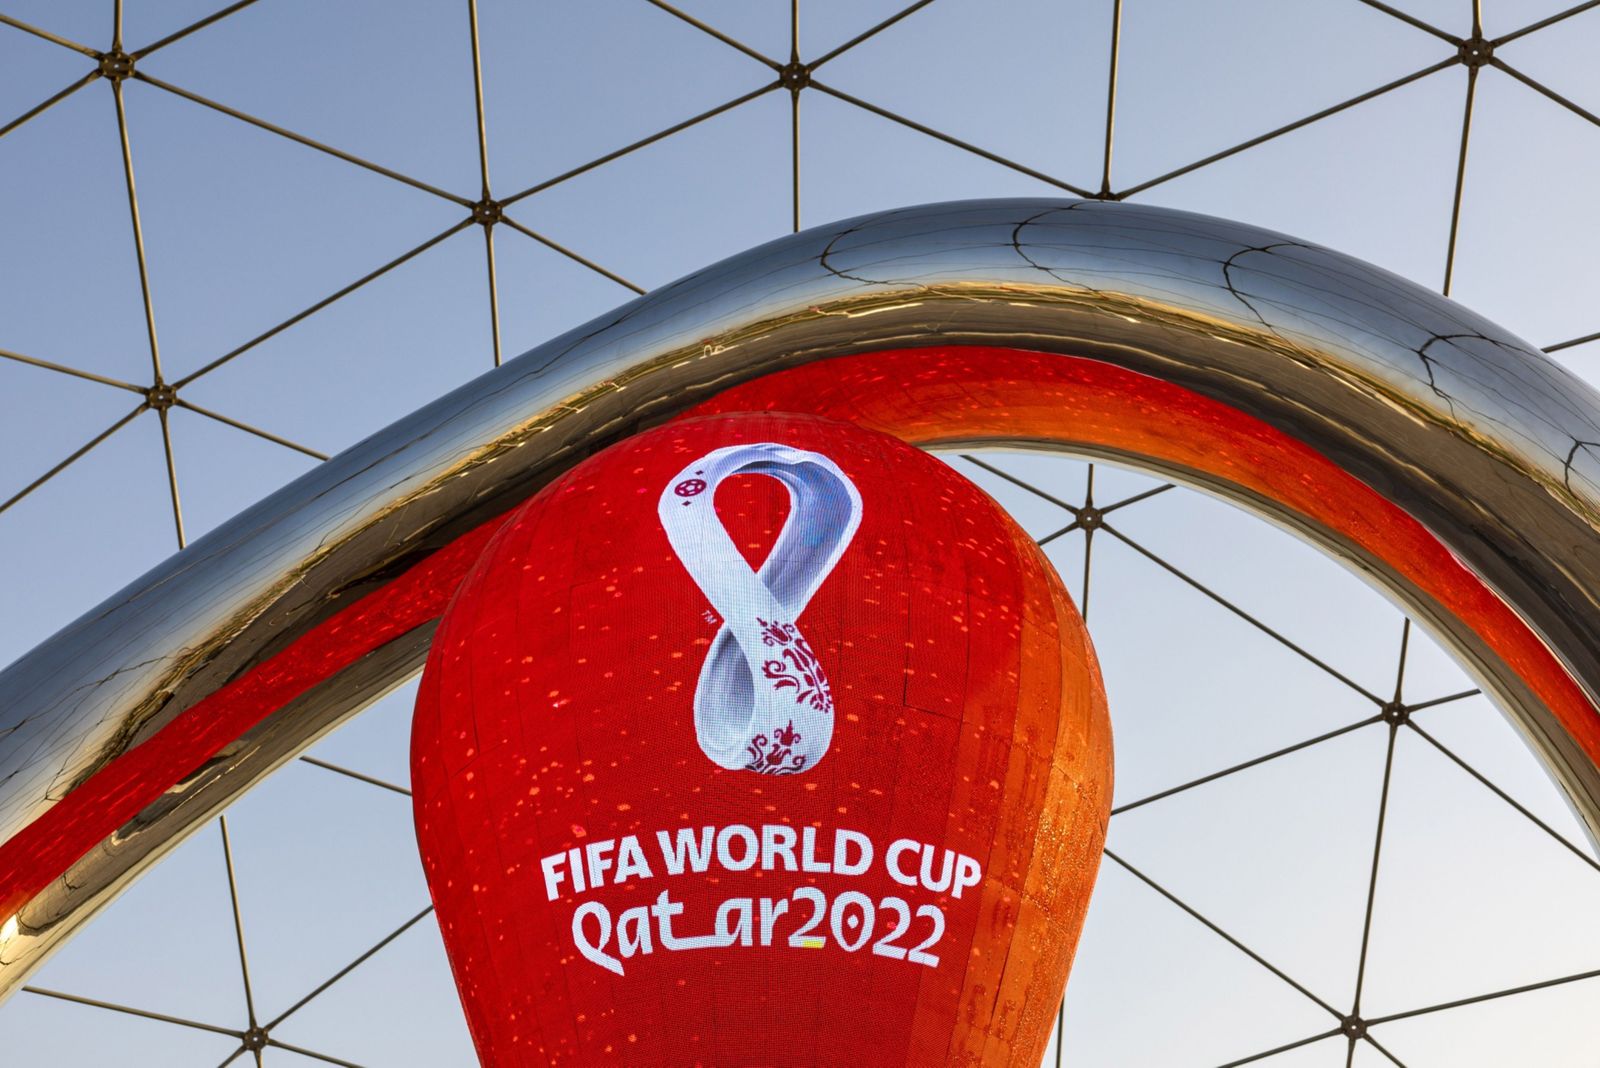 الفيفا: بيع 2.45 مليون تذكرة لمباريات كأس العالم في قطر